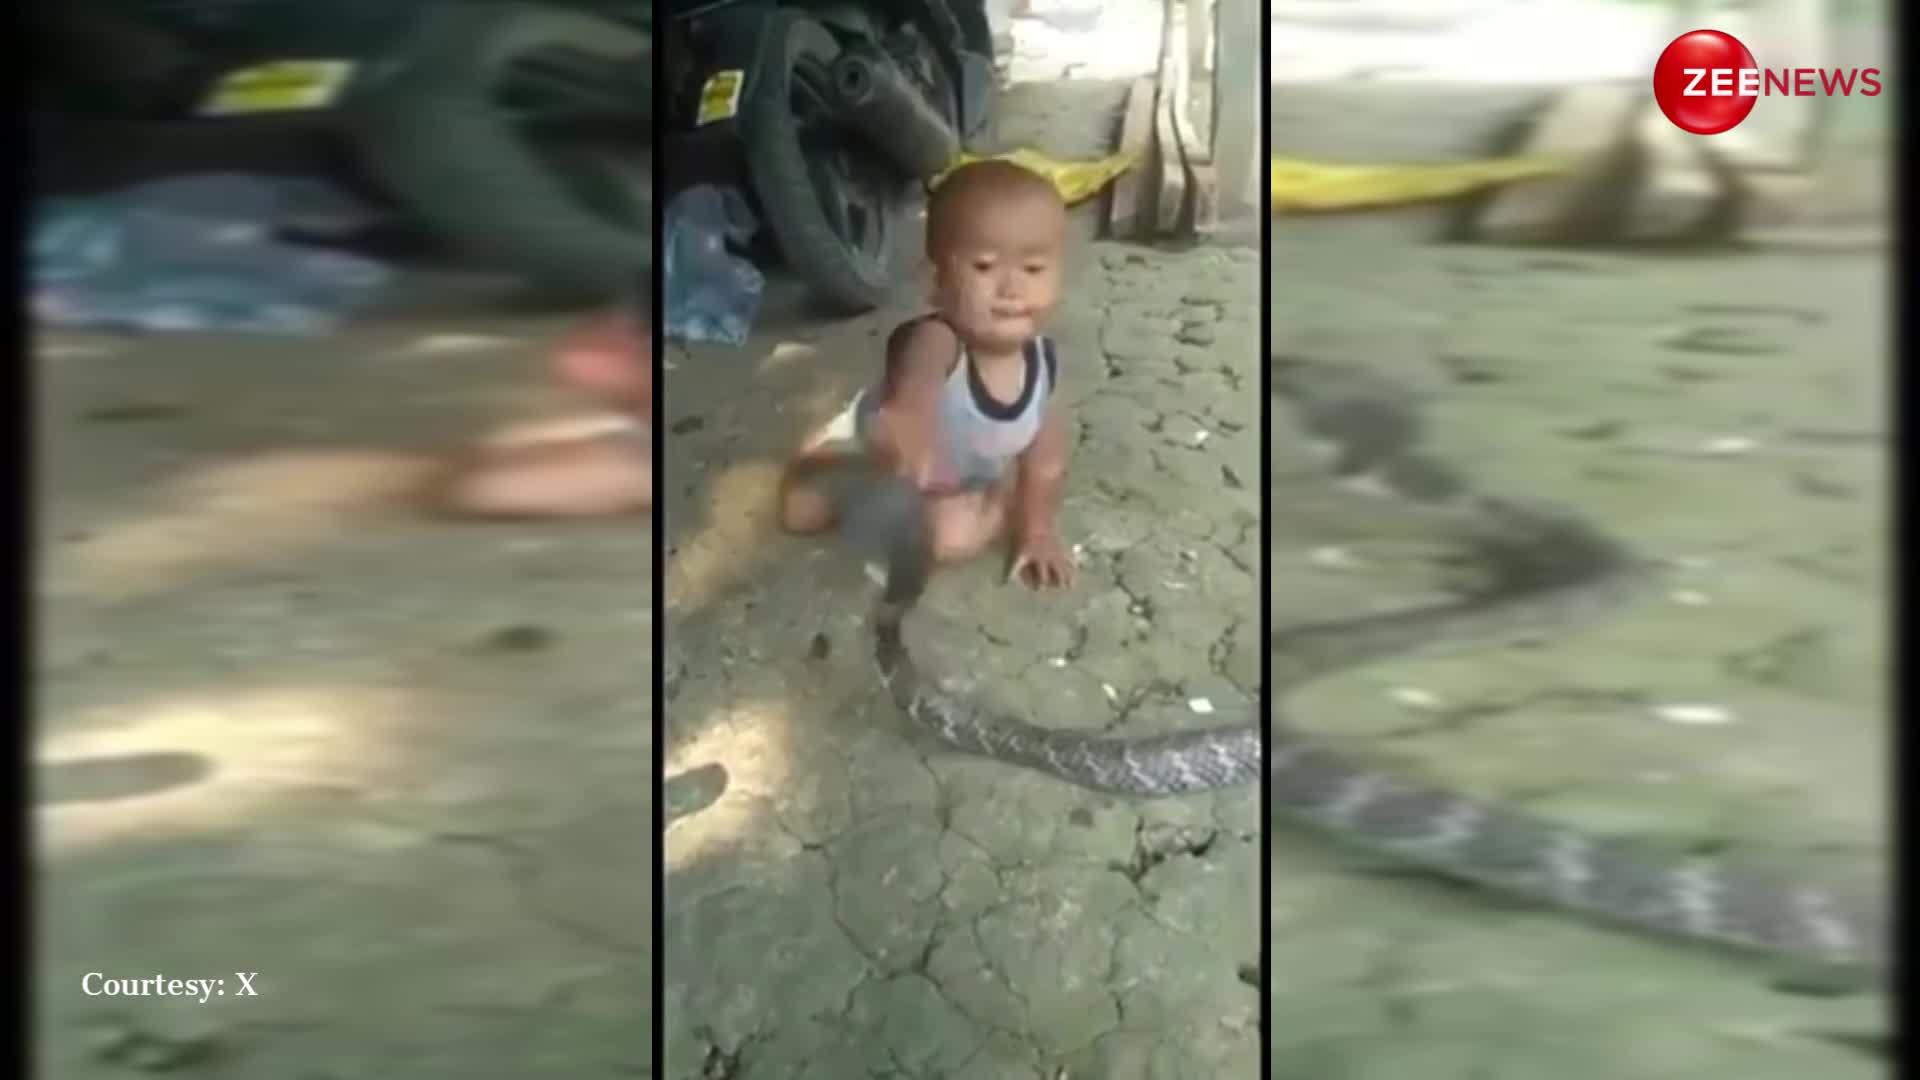 Kid plays with Snake: खूंखार सांप की गर्दन पकड़-पकड़कर खेलता दिखा नन्हा था बालक, नजारा देख कांप जाएगा कलेजा